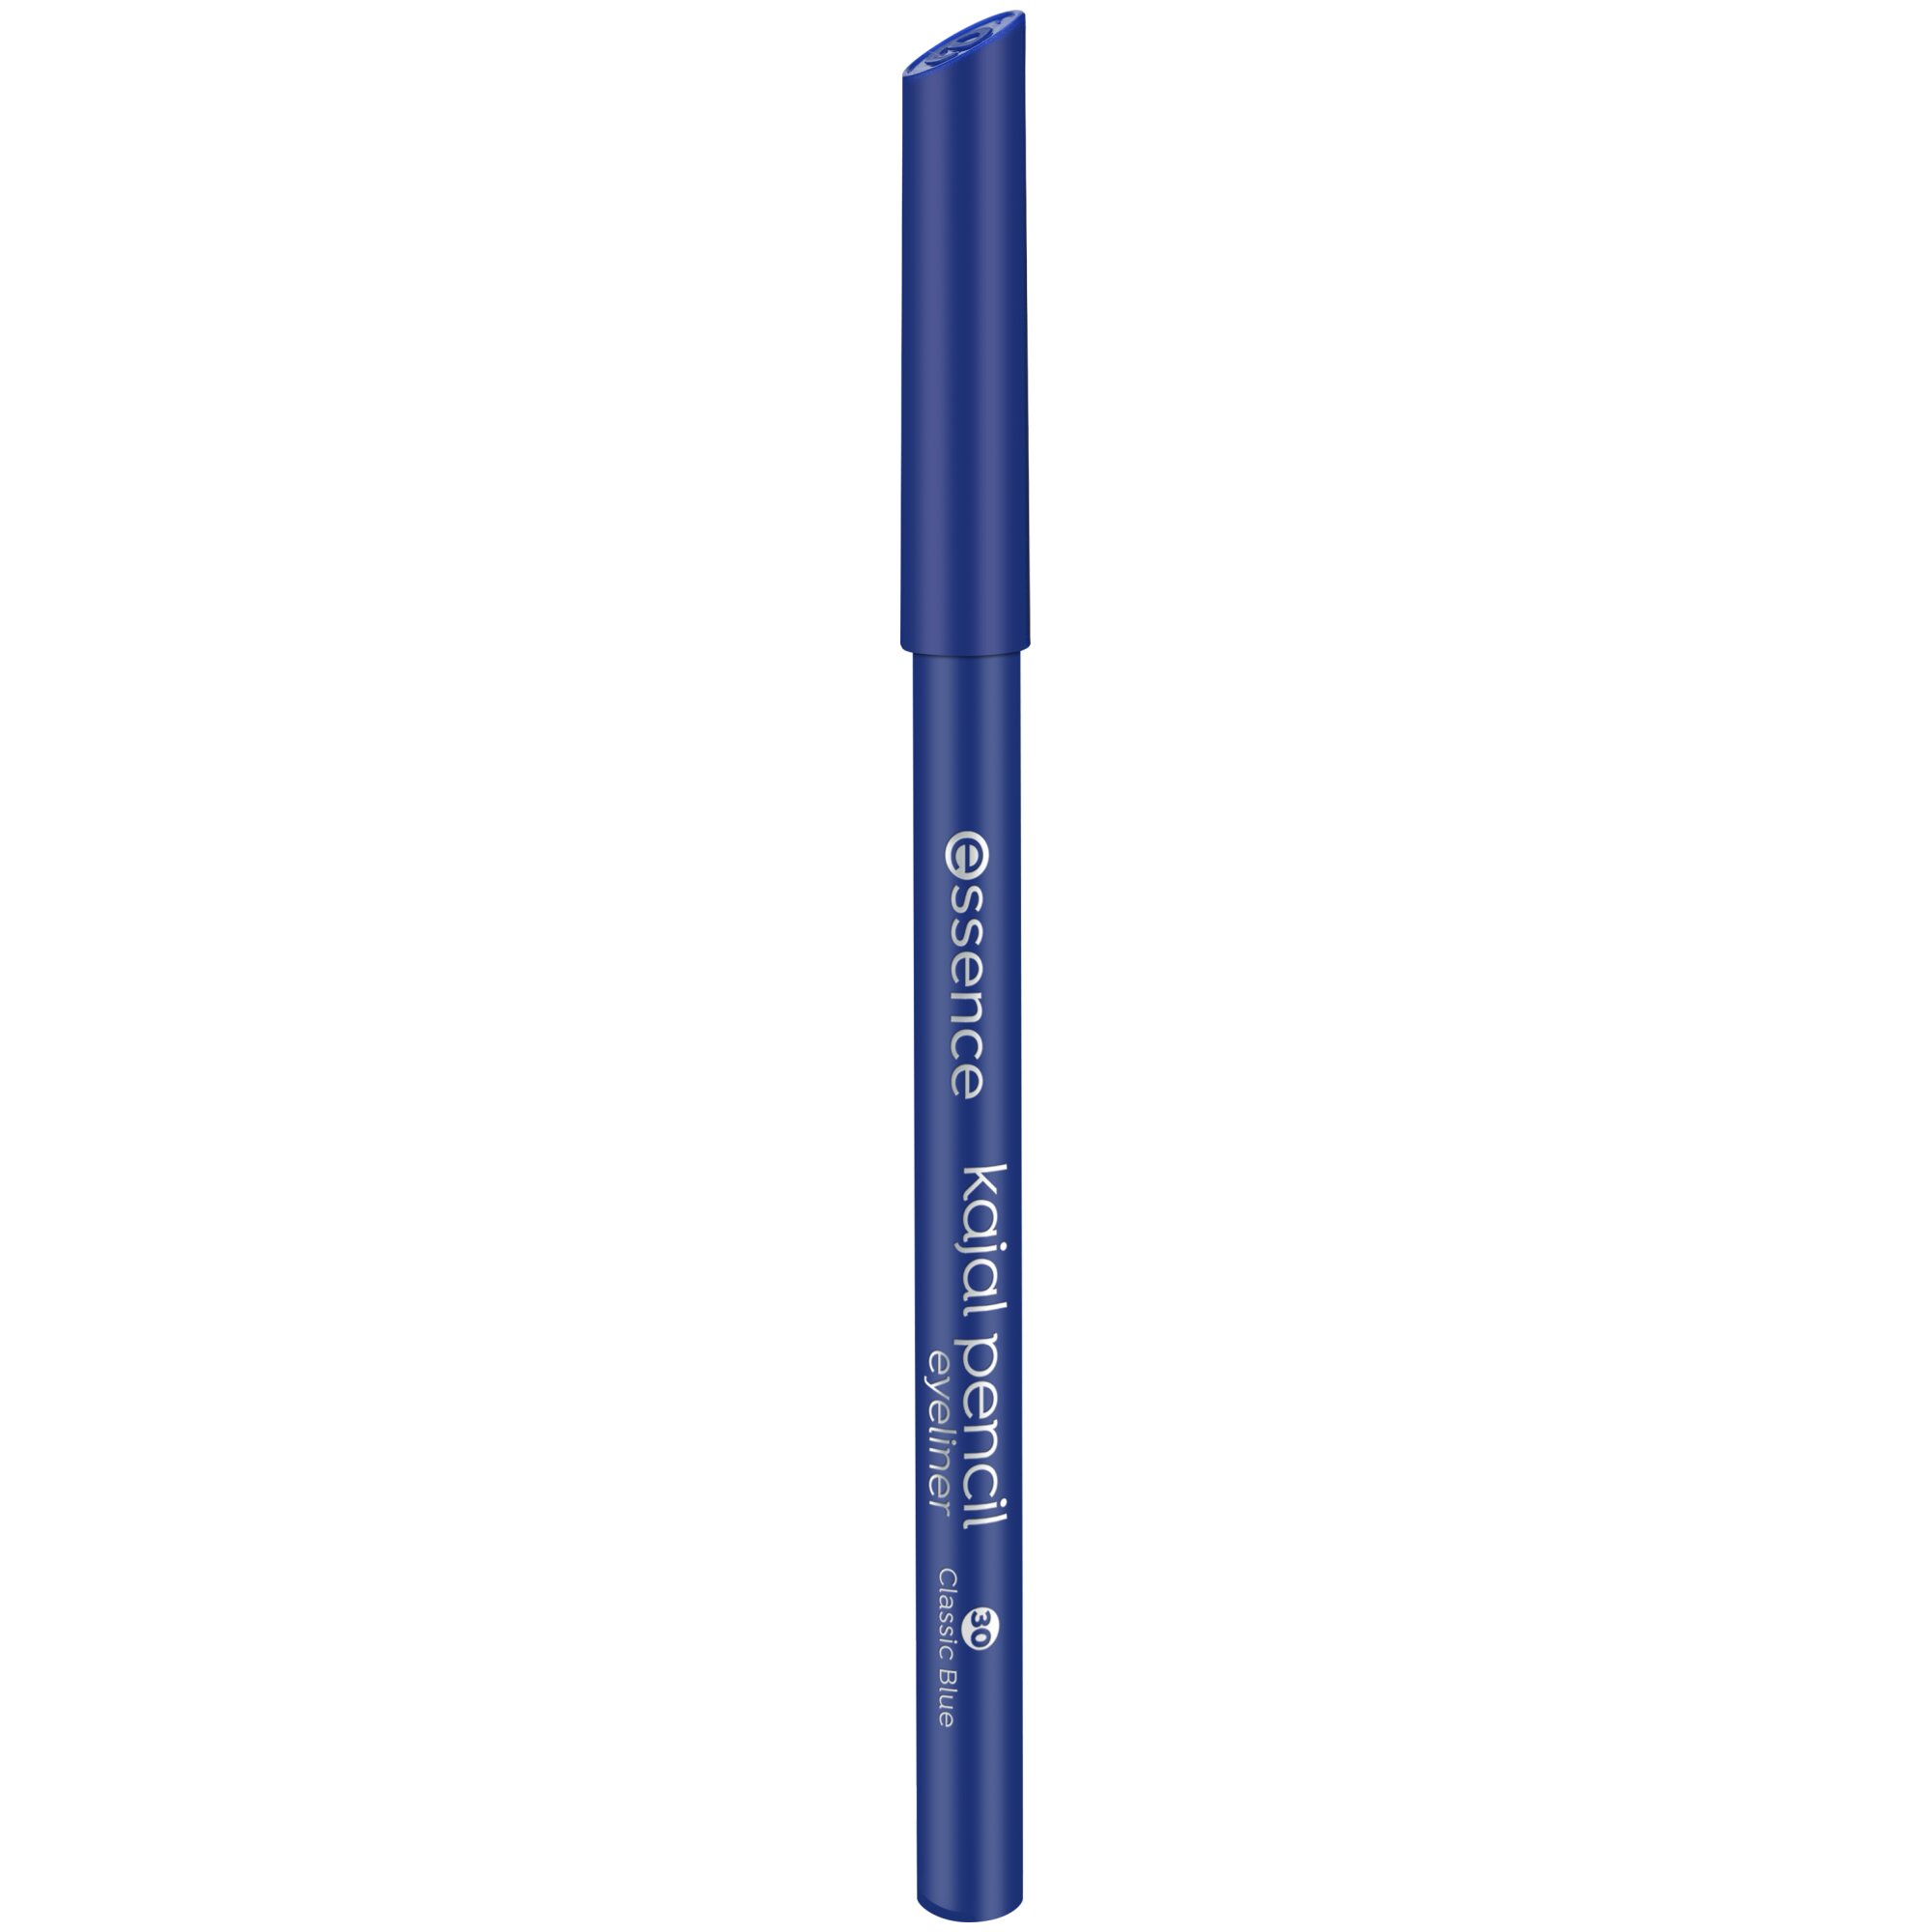 Creion pentru ochi kajal pencil Kajal Pencil, 30 - Classic Blue, 1 g, Essence